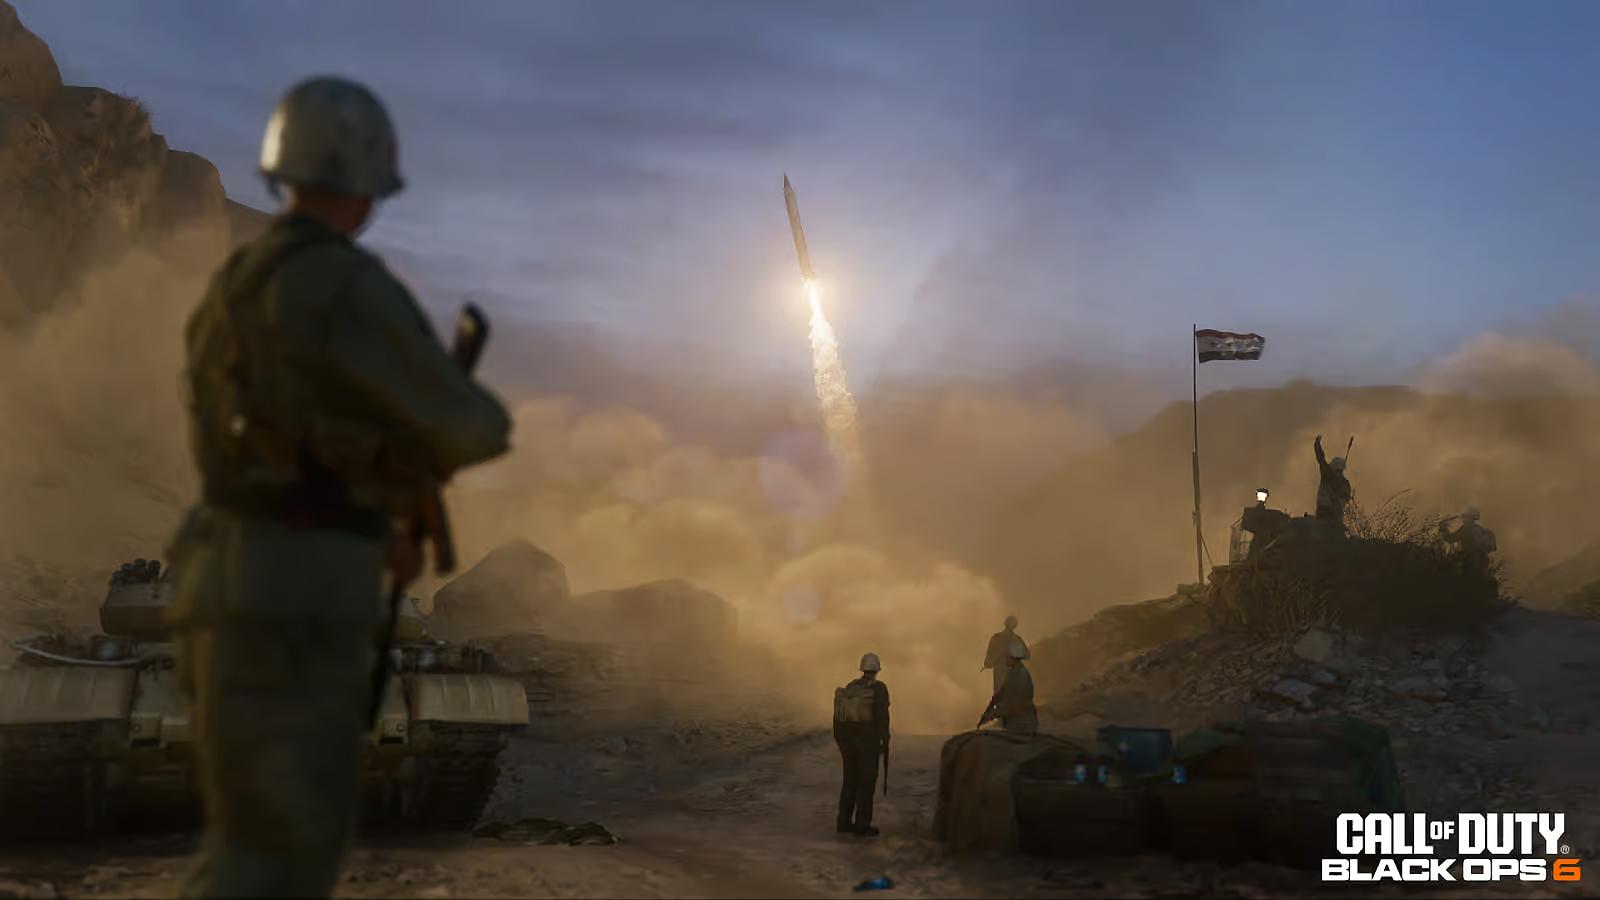 Personnages de Black Ops 6 qui regardent un missile lancé dans les airs